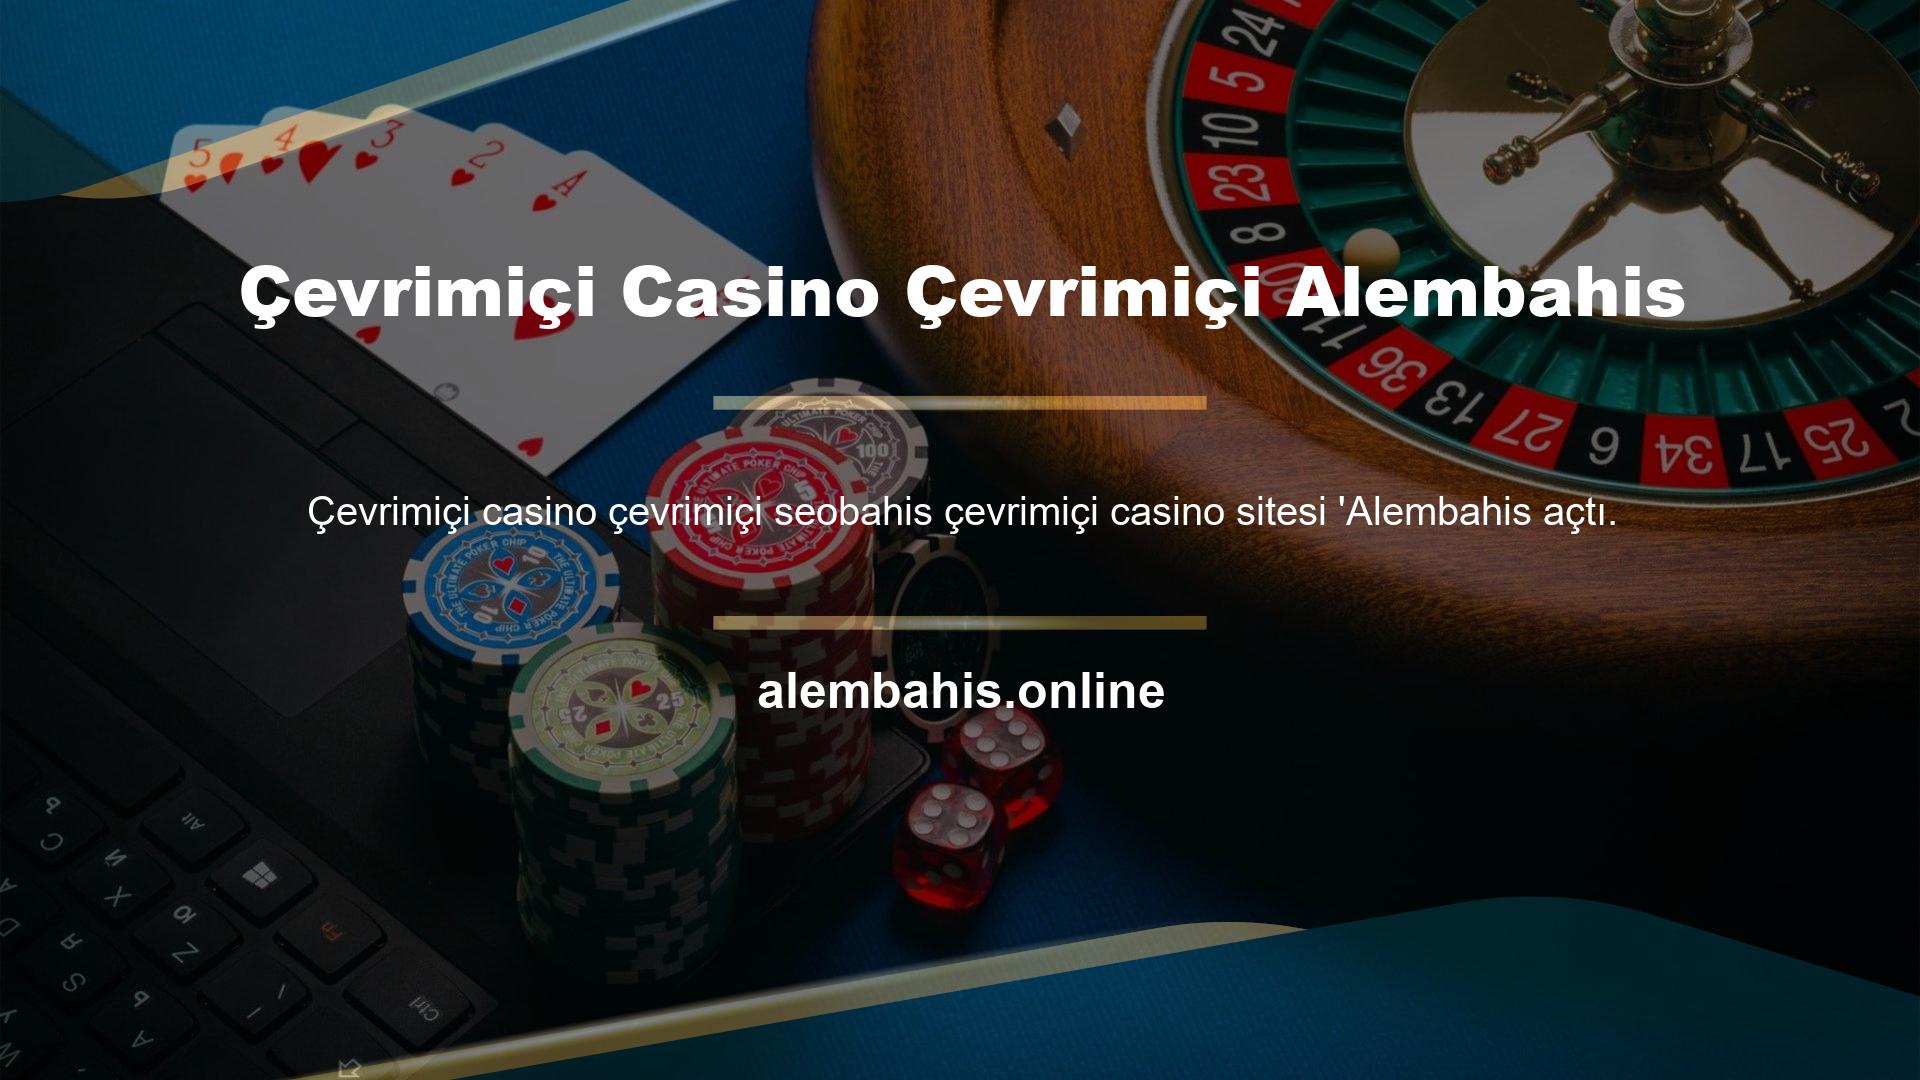 Casino oyunları sitenin kapsadığı başlıca kategoriler arasındadır